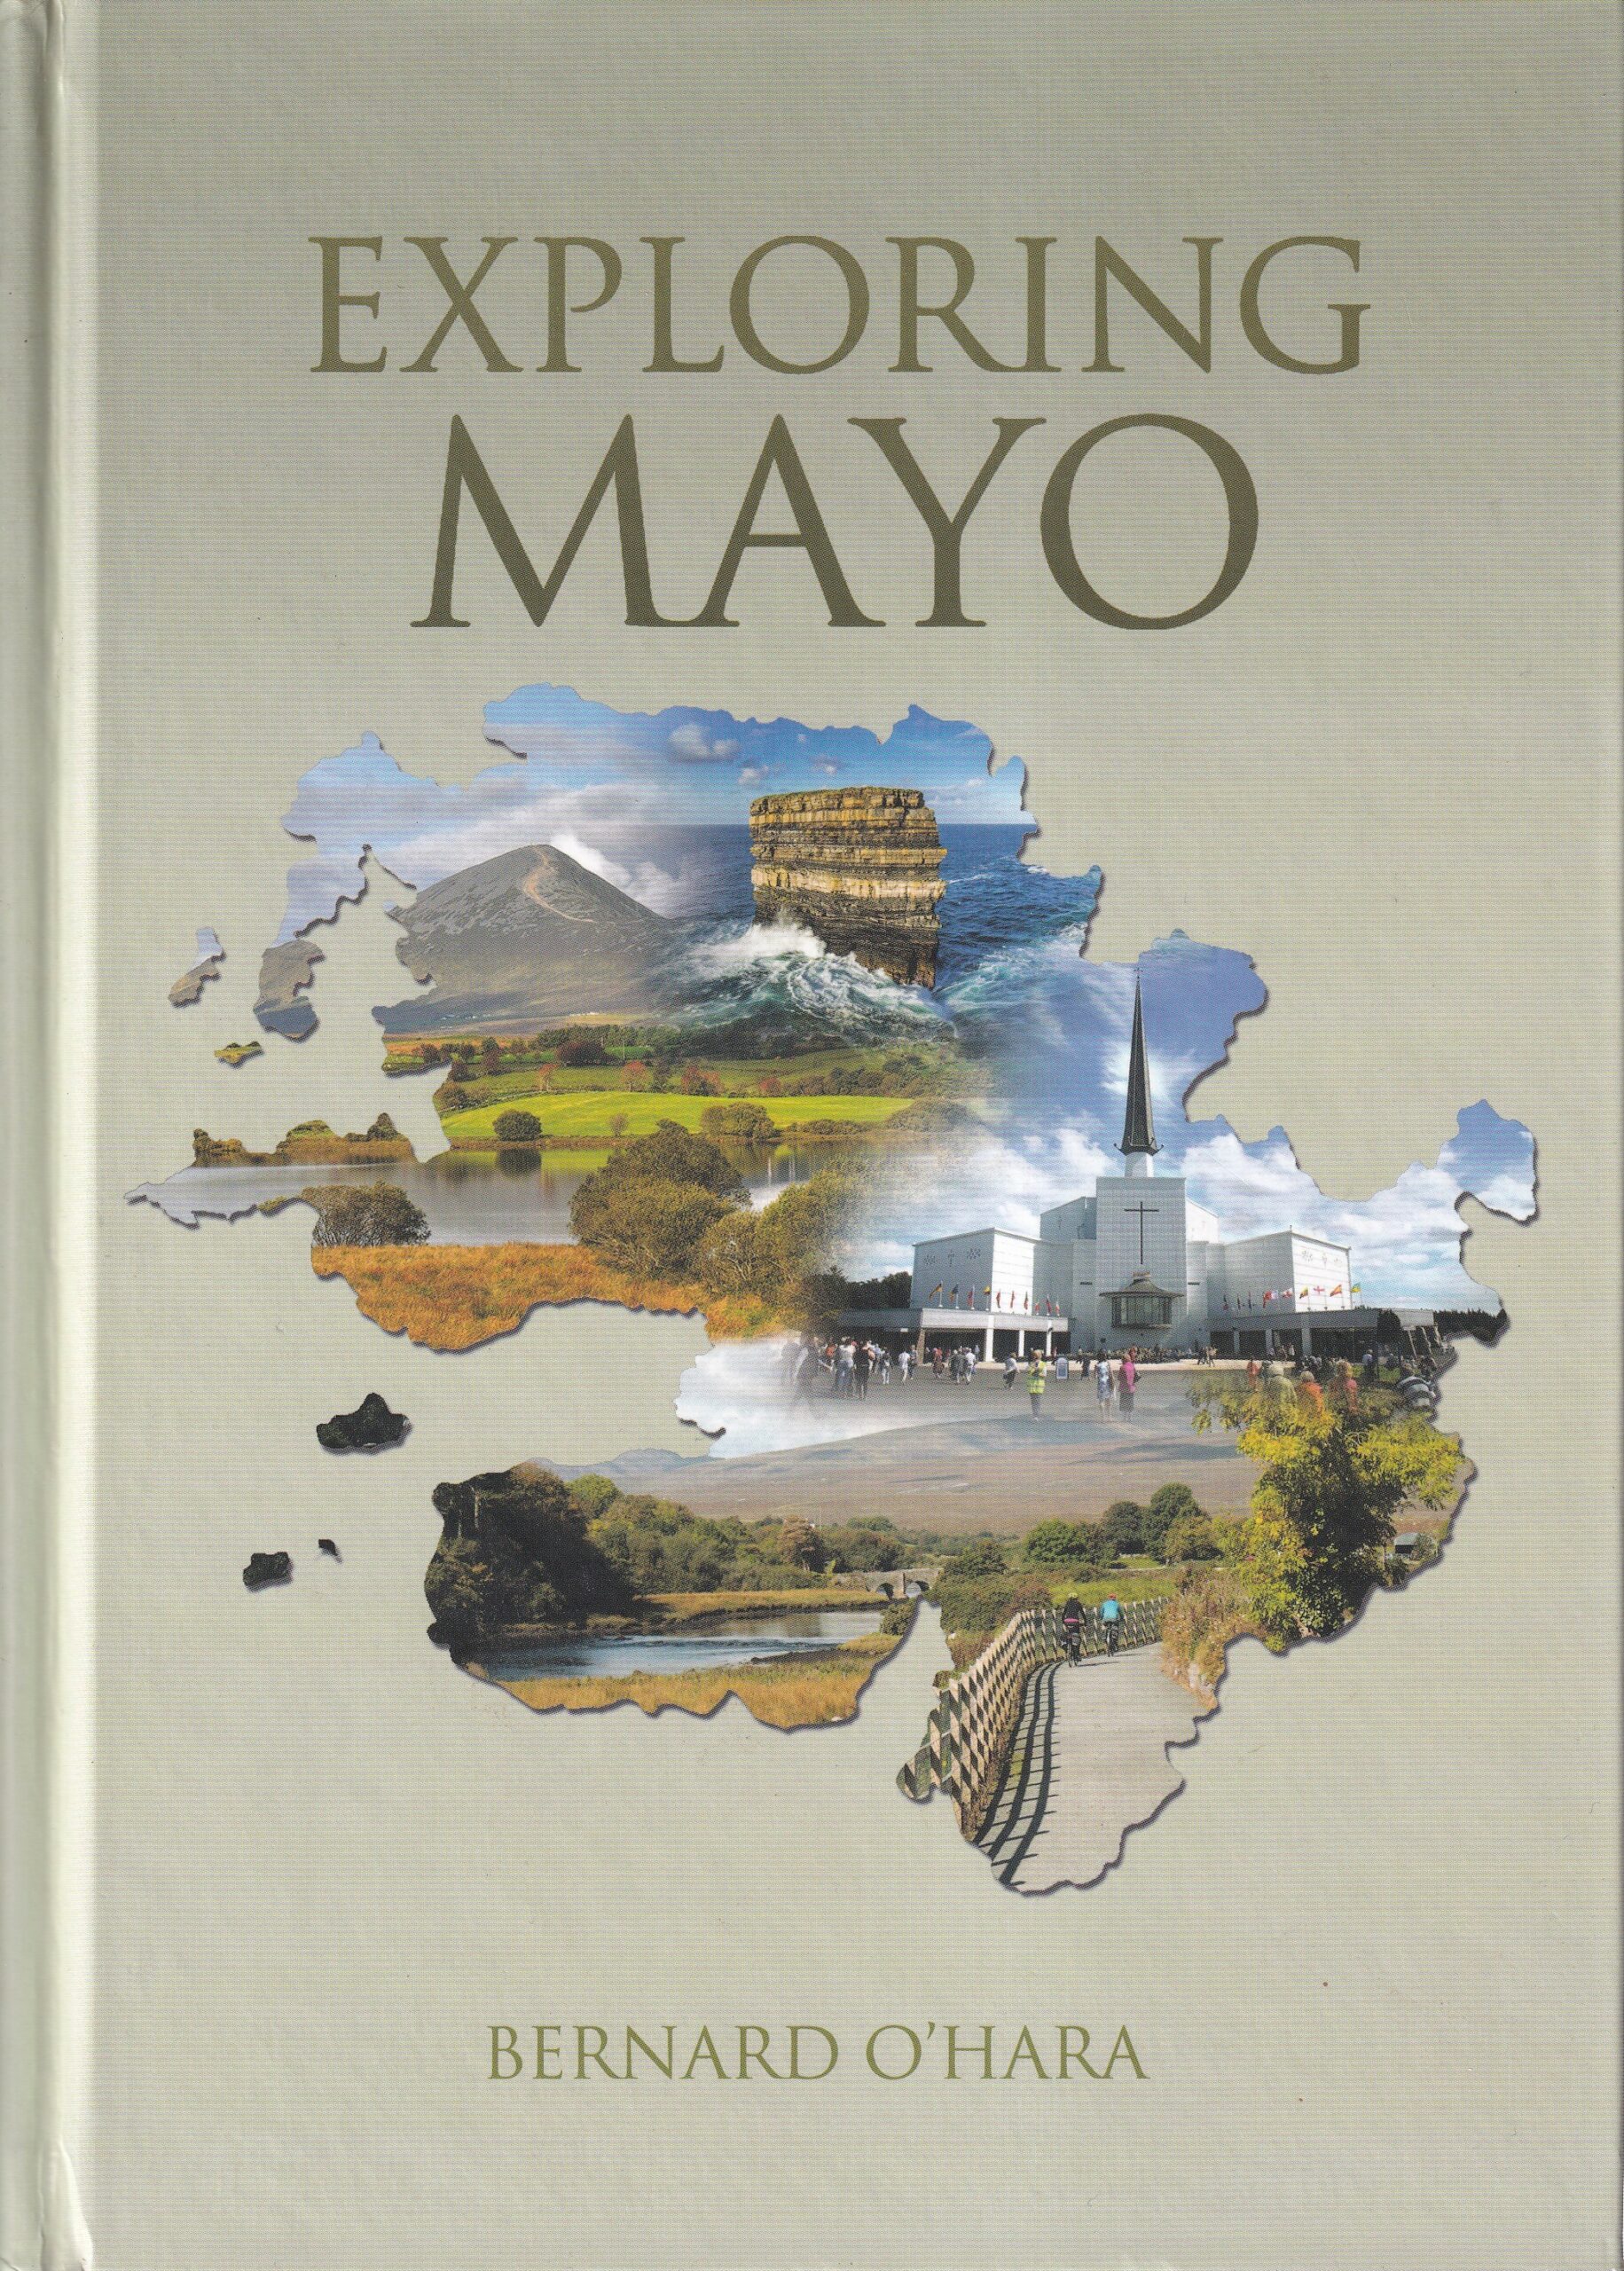 Exploring Mayo- Signed by Bernard O'Hara